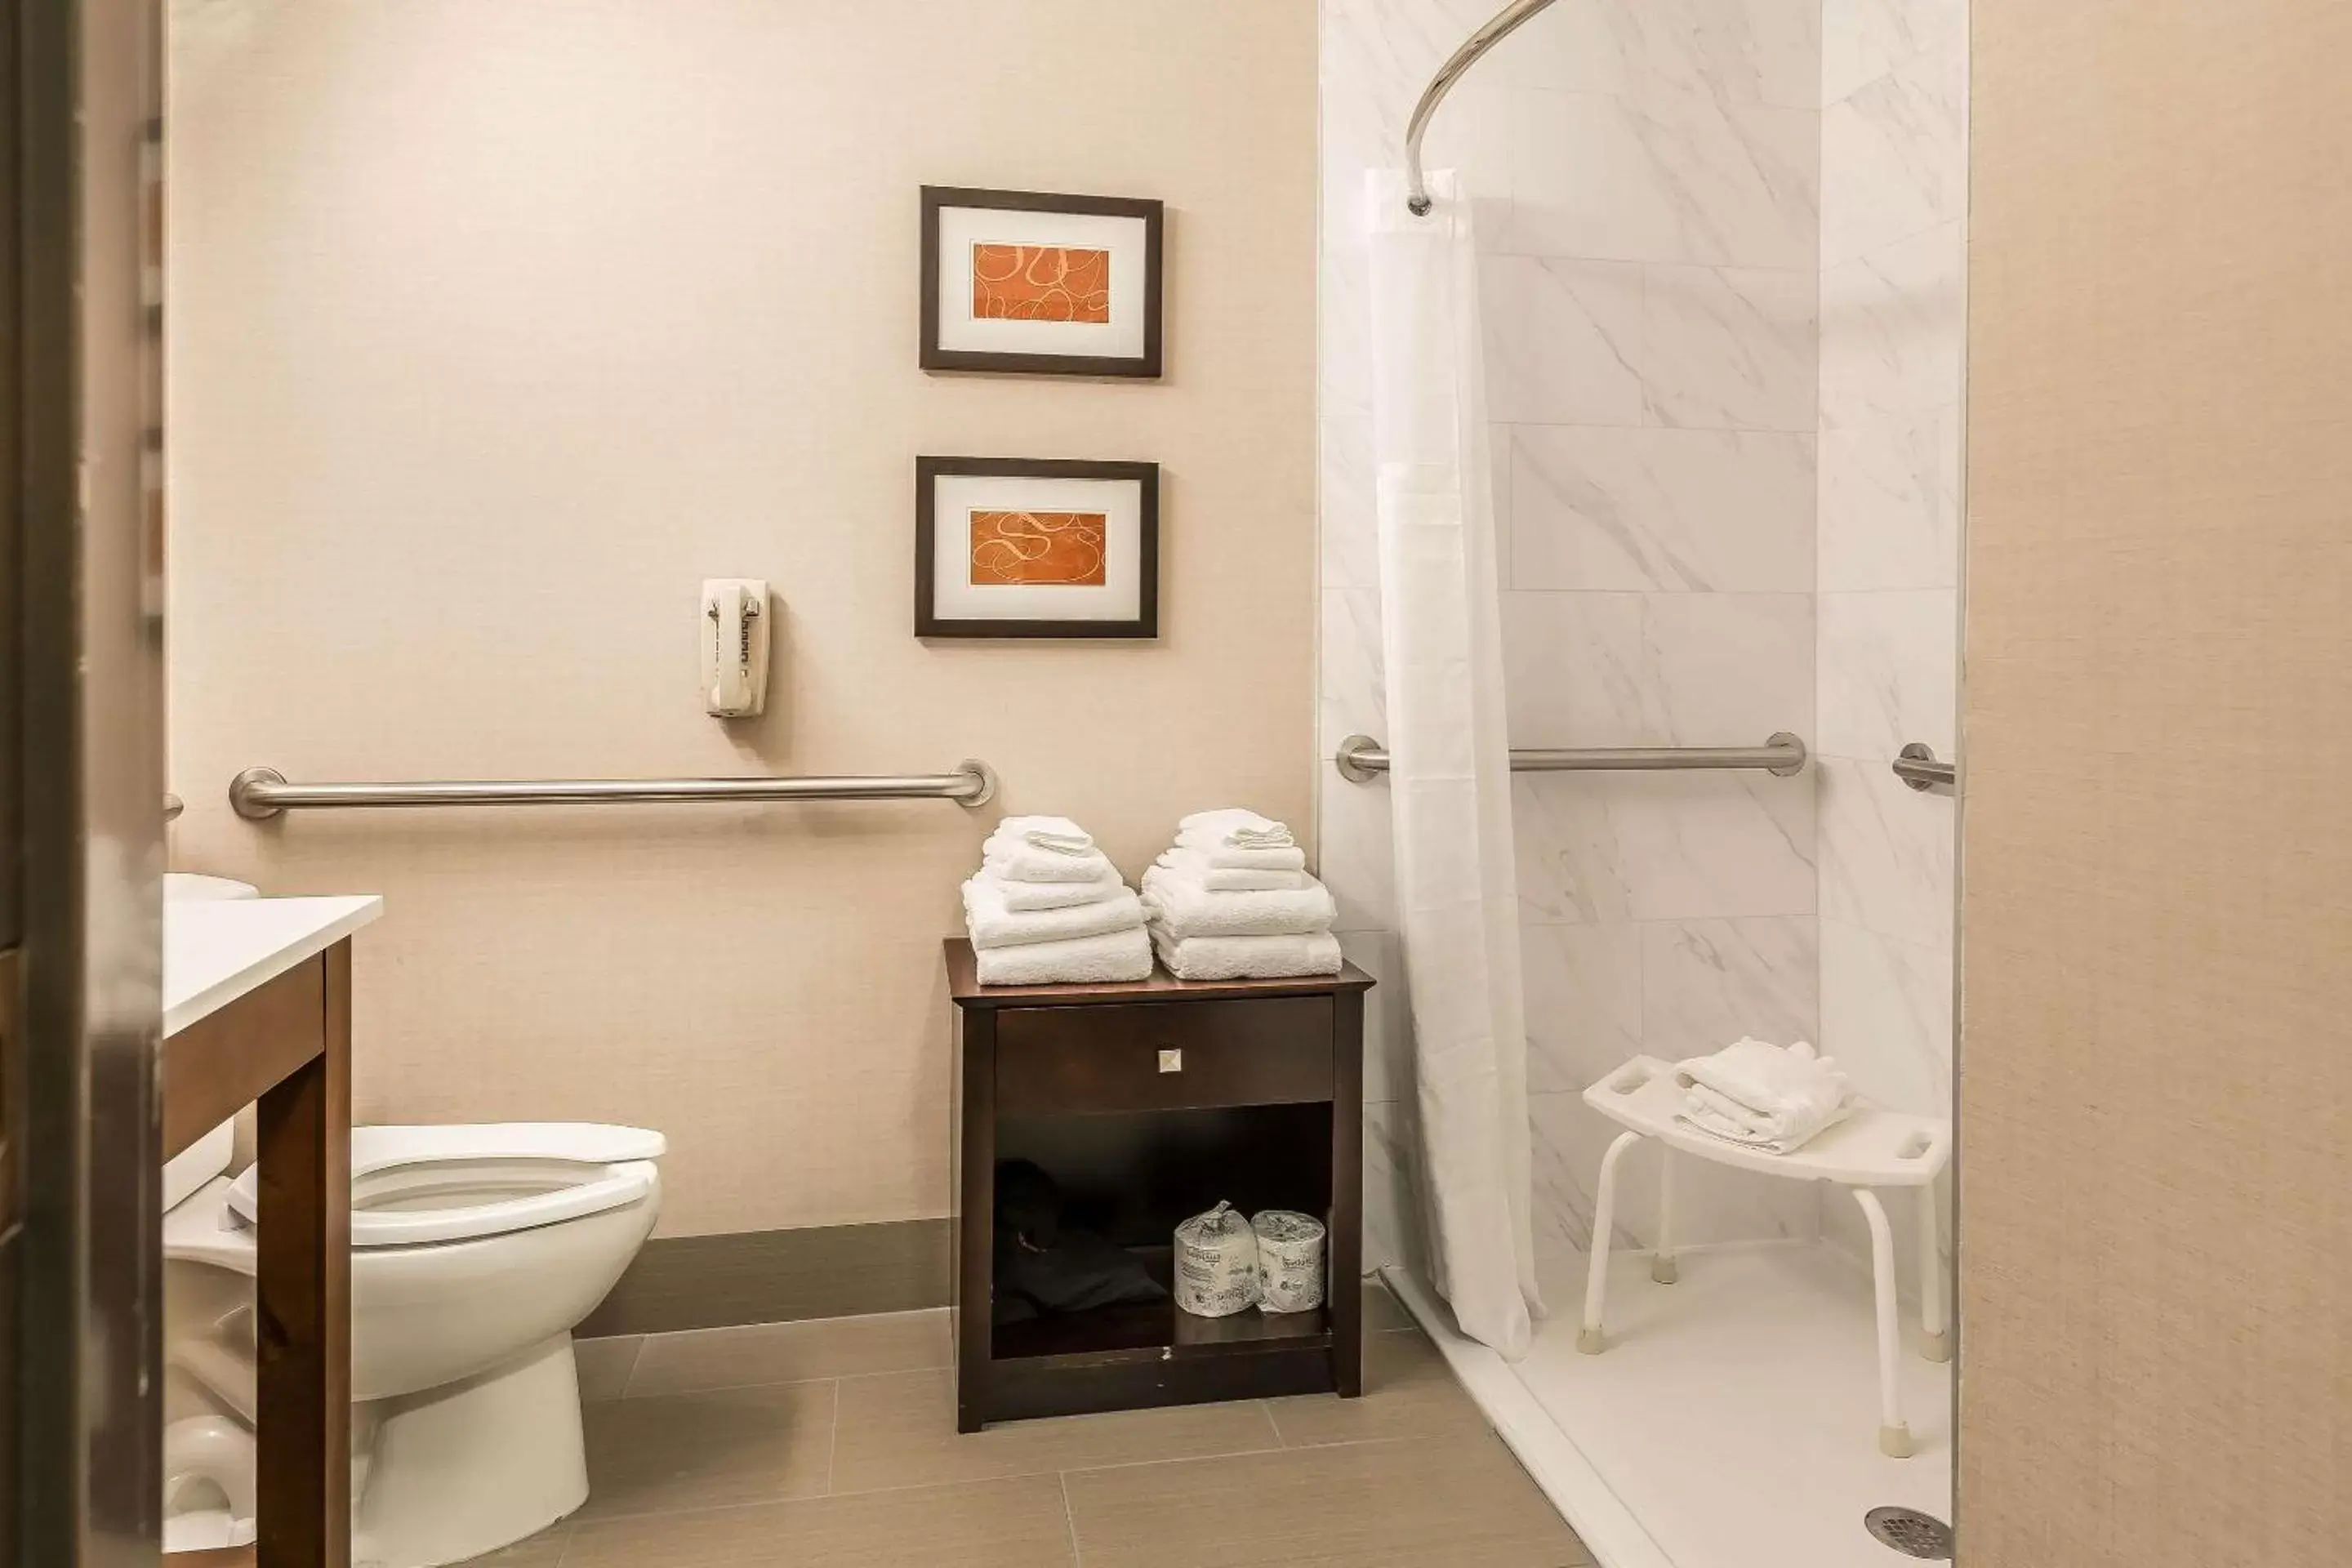 Bedroom, Bathroom in Comfort Suites North Fort Wayne